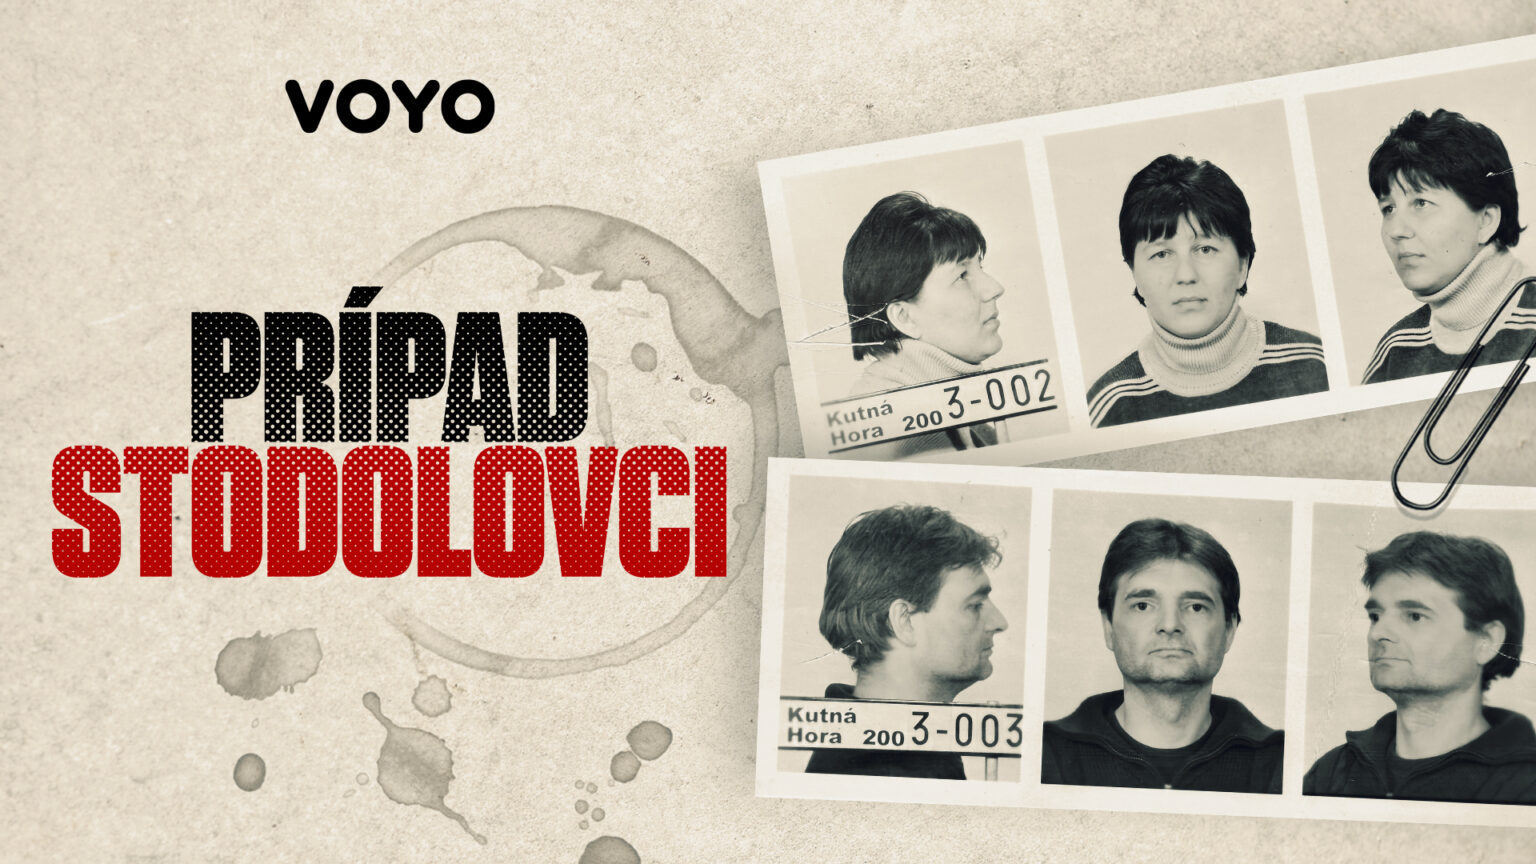 Prípad Stodolovci / Voyo